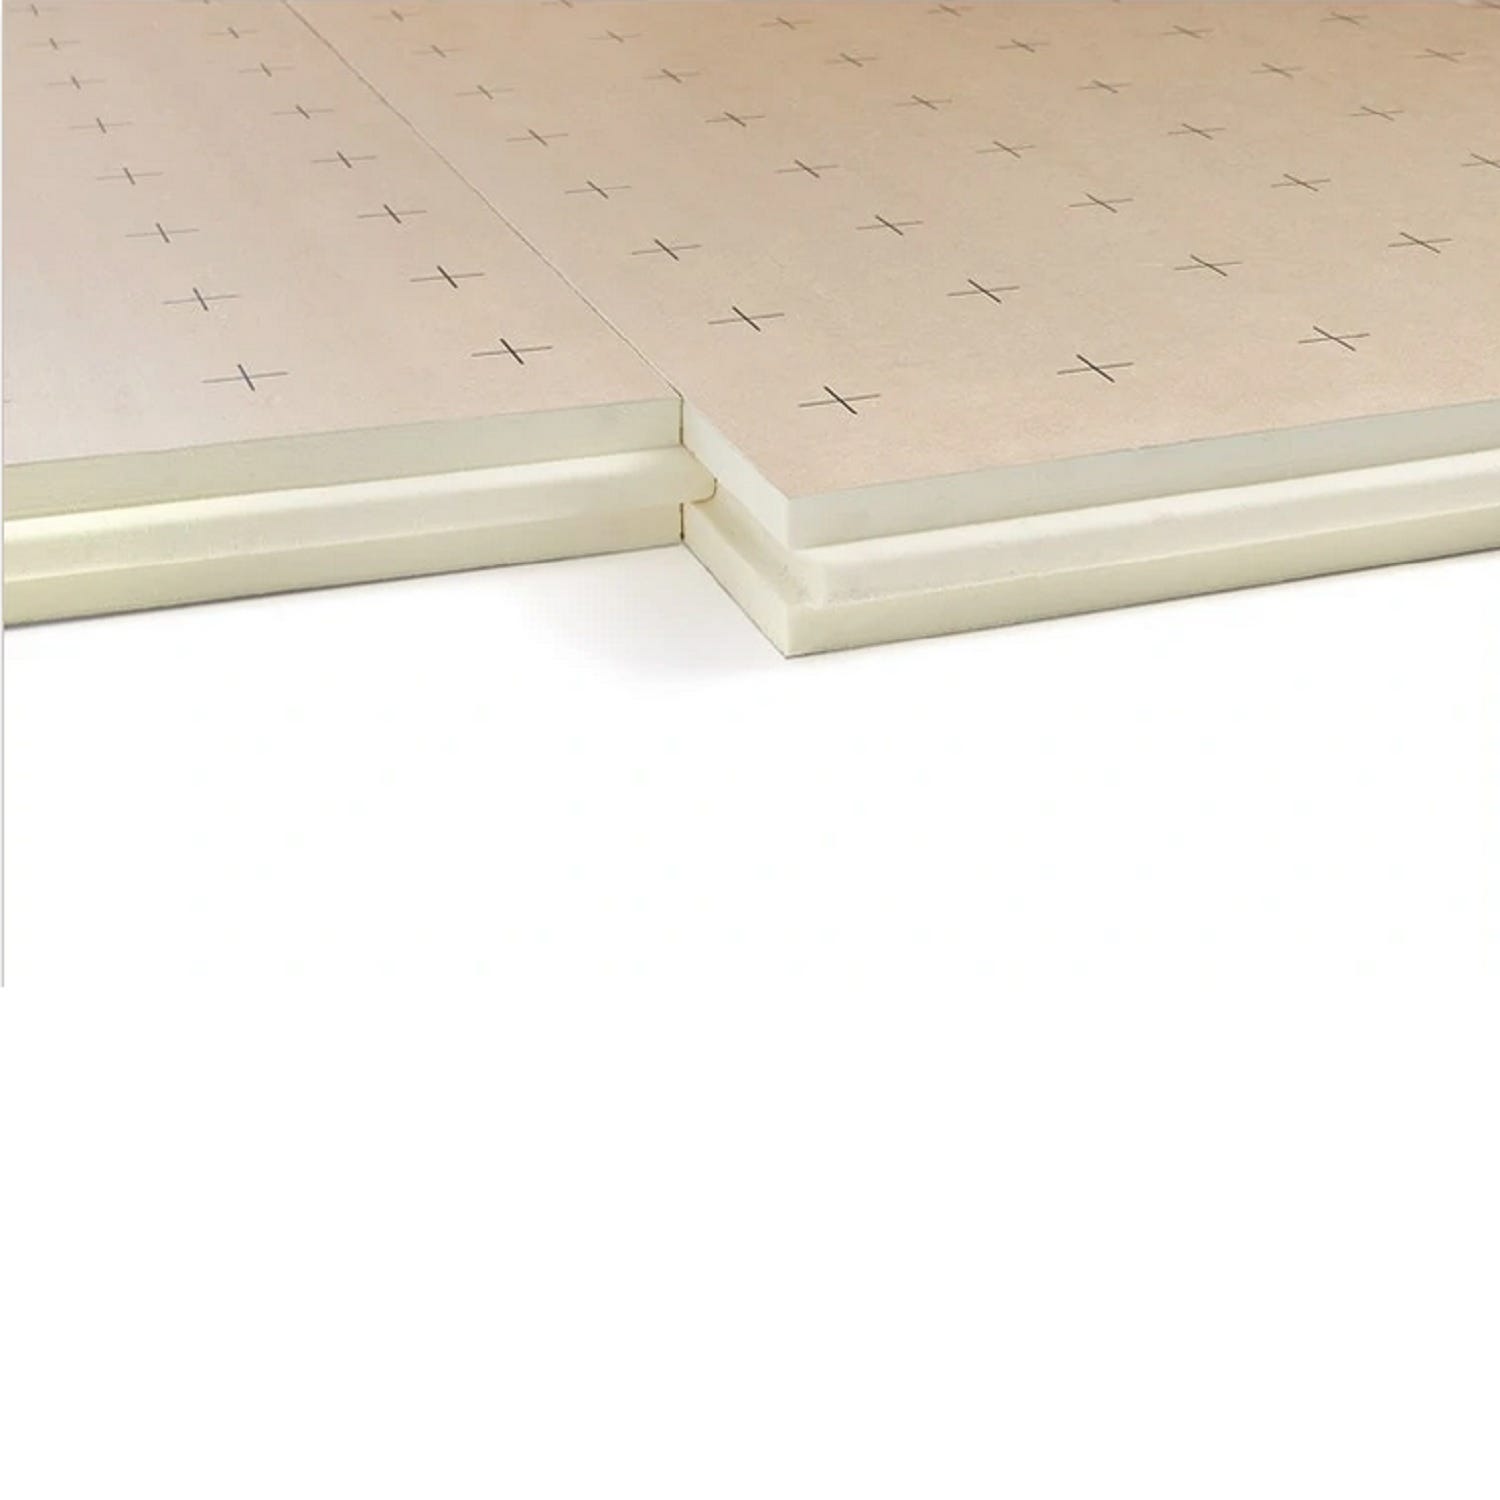 Dalle plancher chauffant épaisseur 53 millimètres R2.40 - paquet de 9 dalles - 10.8 m2 2